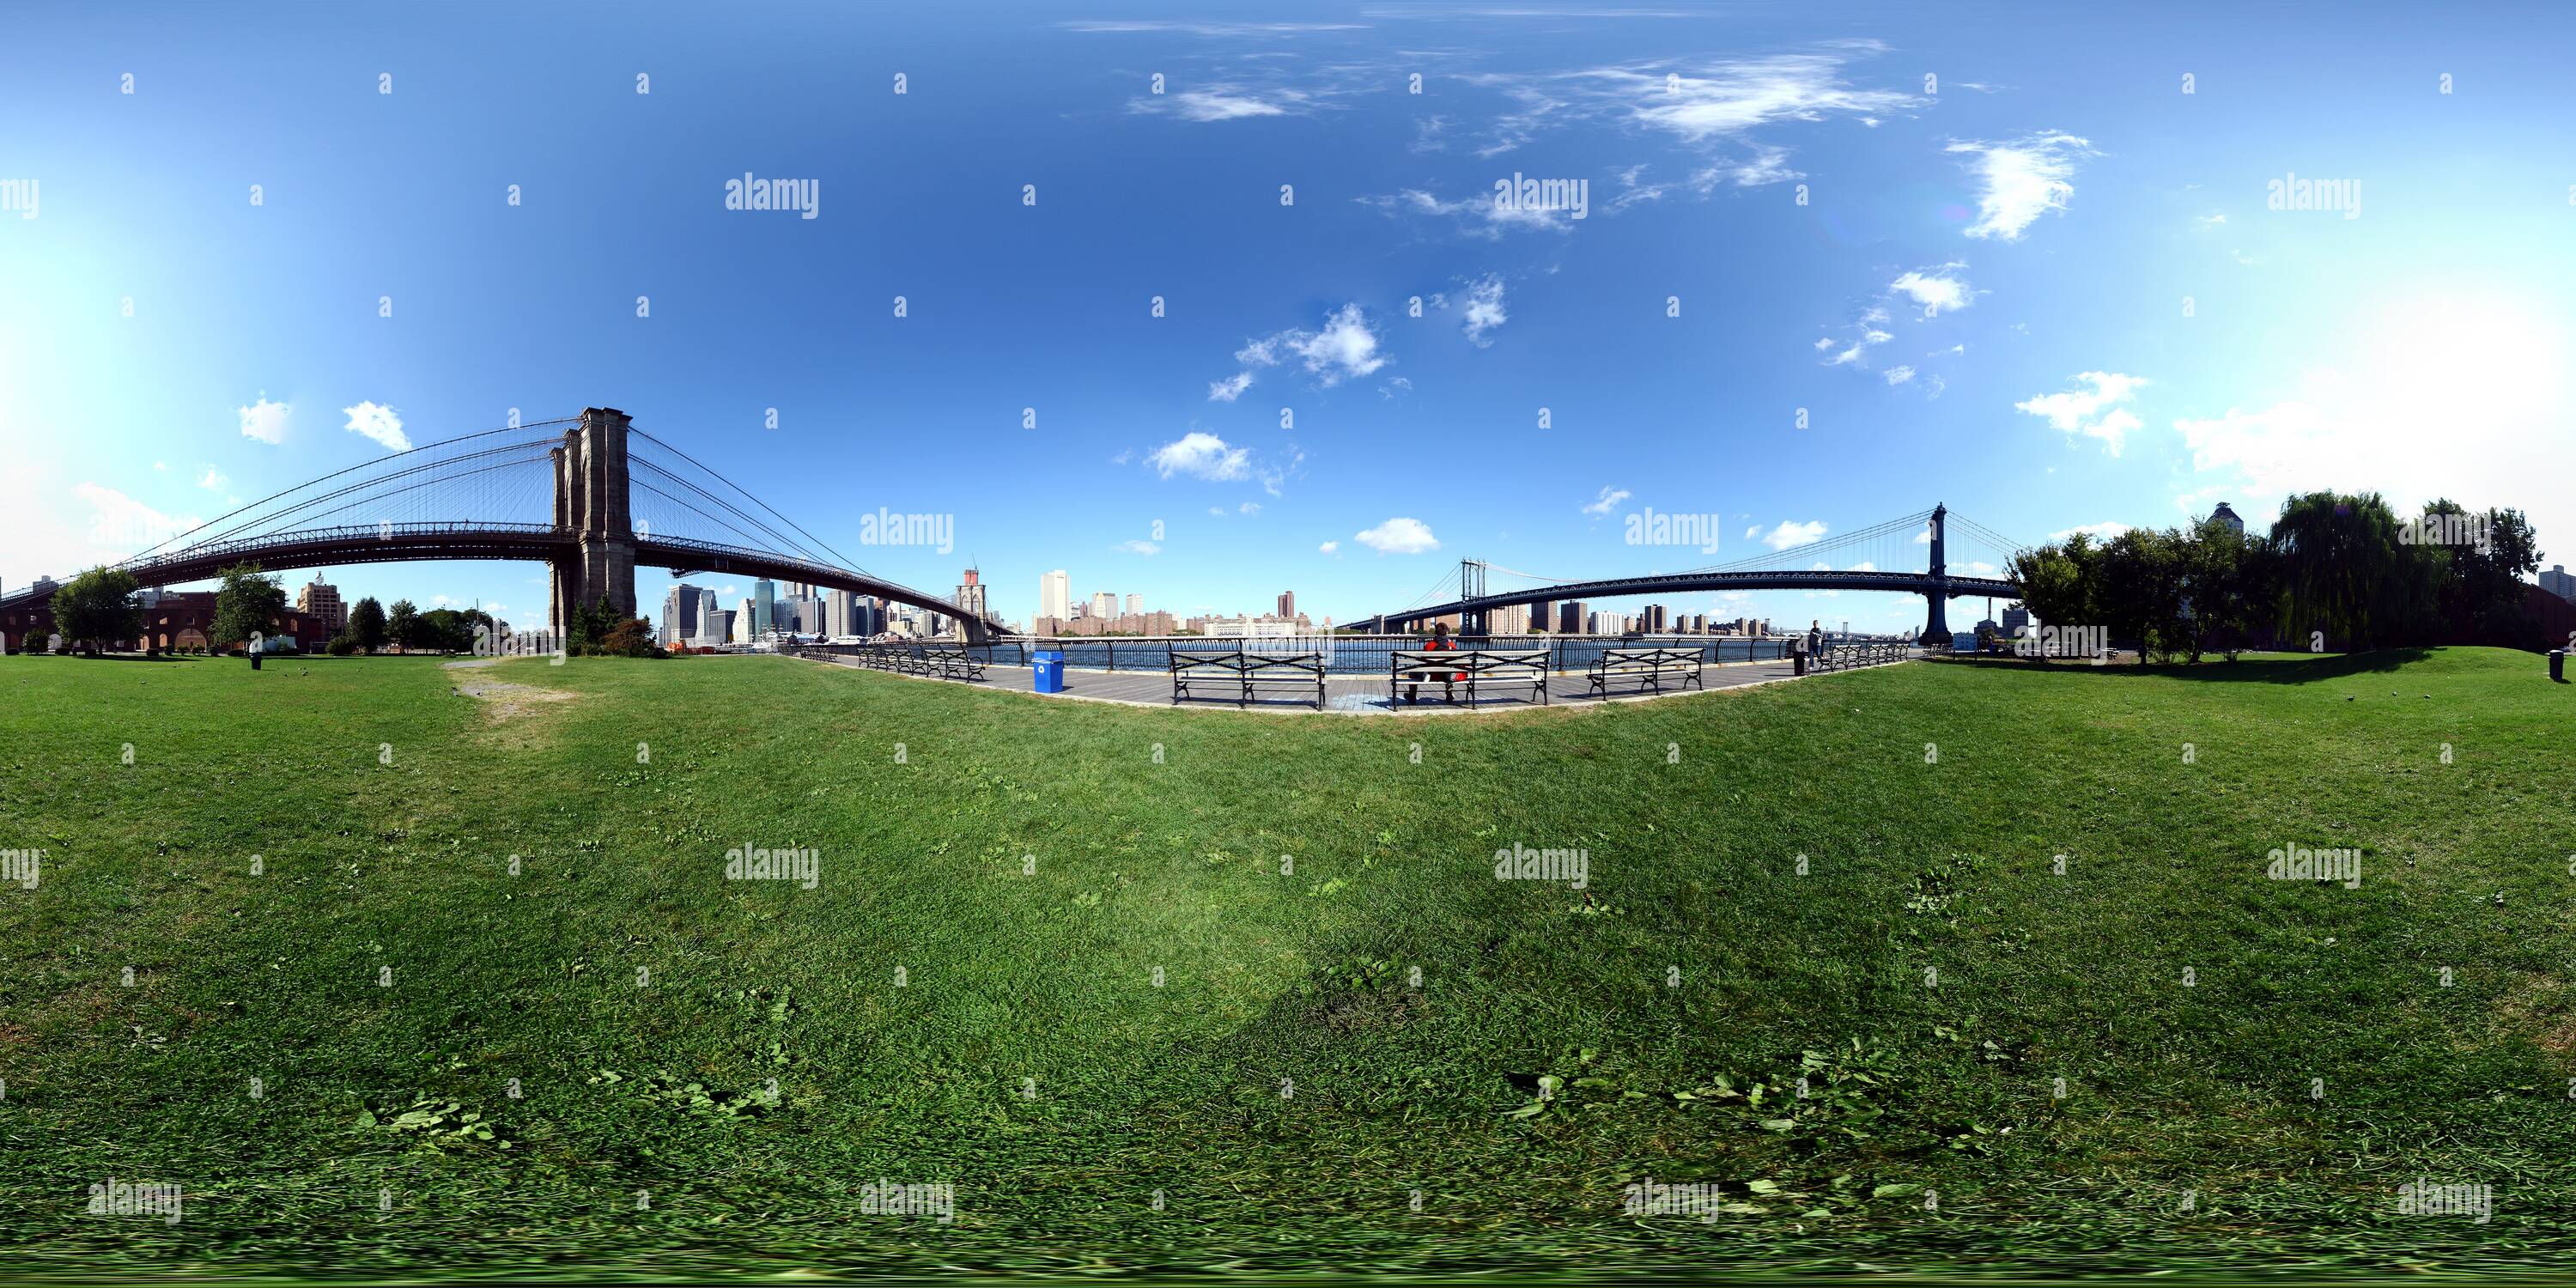 Vue panoramique à 360° de Empire Fulton Ferry State Park